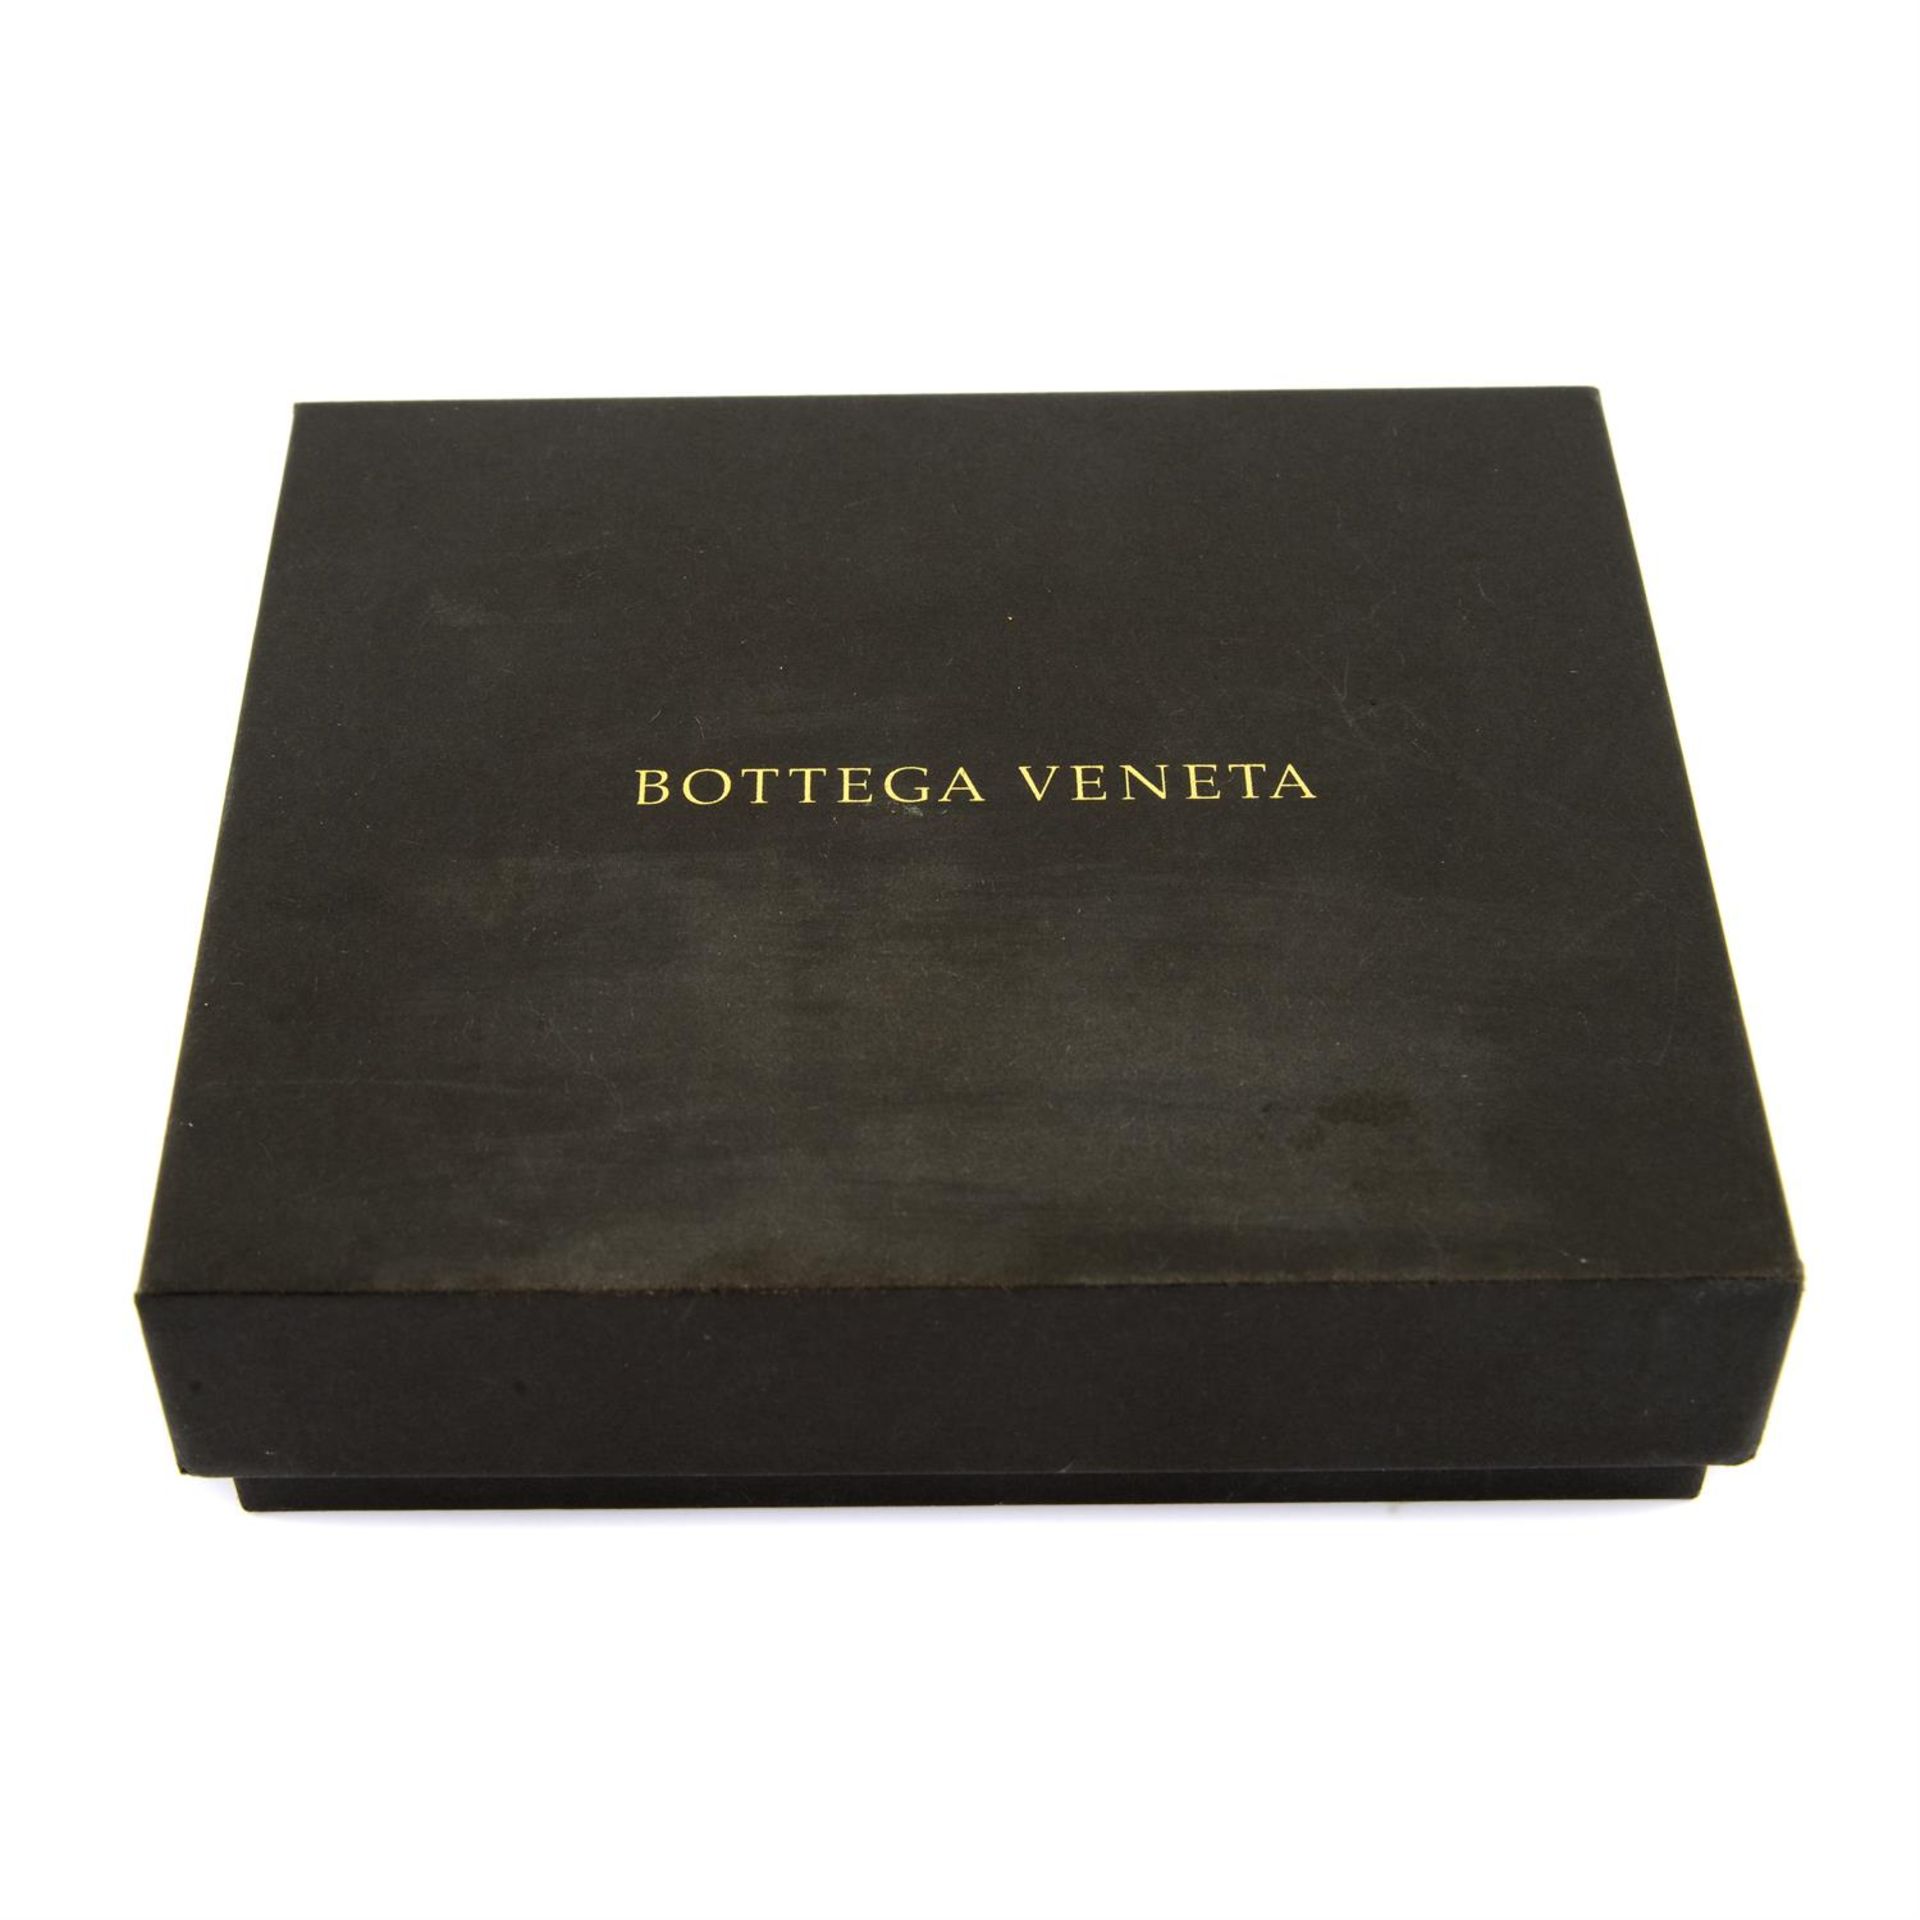 BOTTEGA VENETA - a burgundy leather card holder. - Bild 3 aus 3